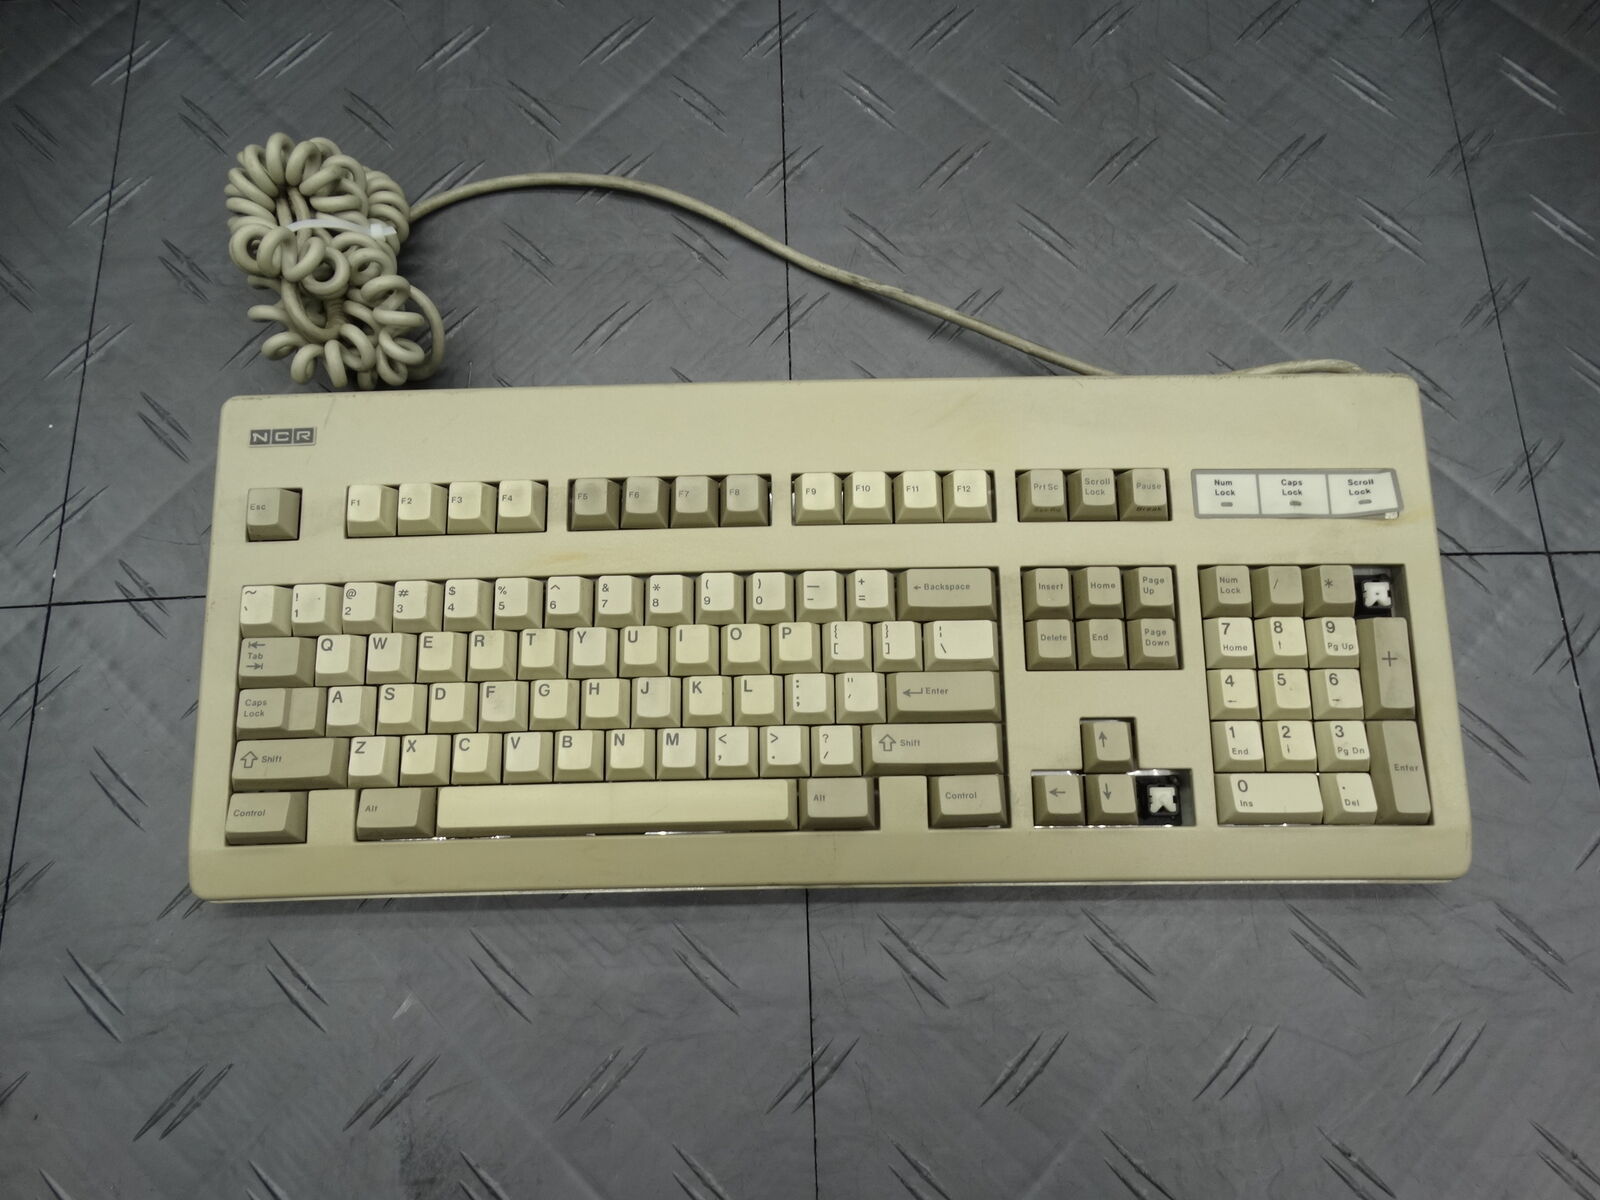 NCR Mechanical Clicky Keyboard Vintage H0150-STD1-12-17 Beige (Missing Keys)